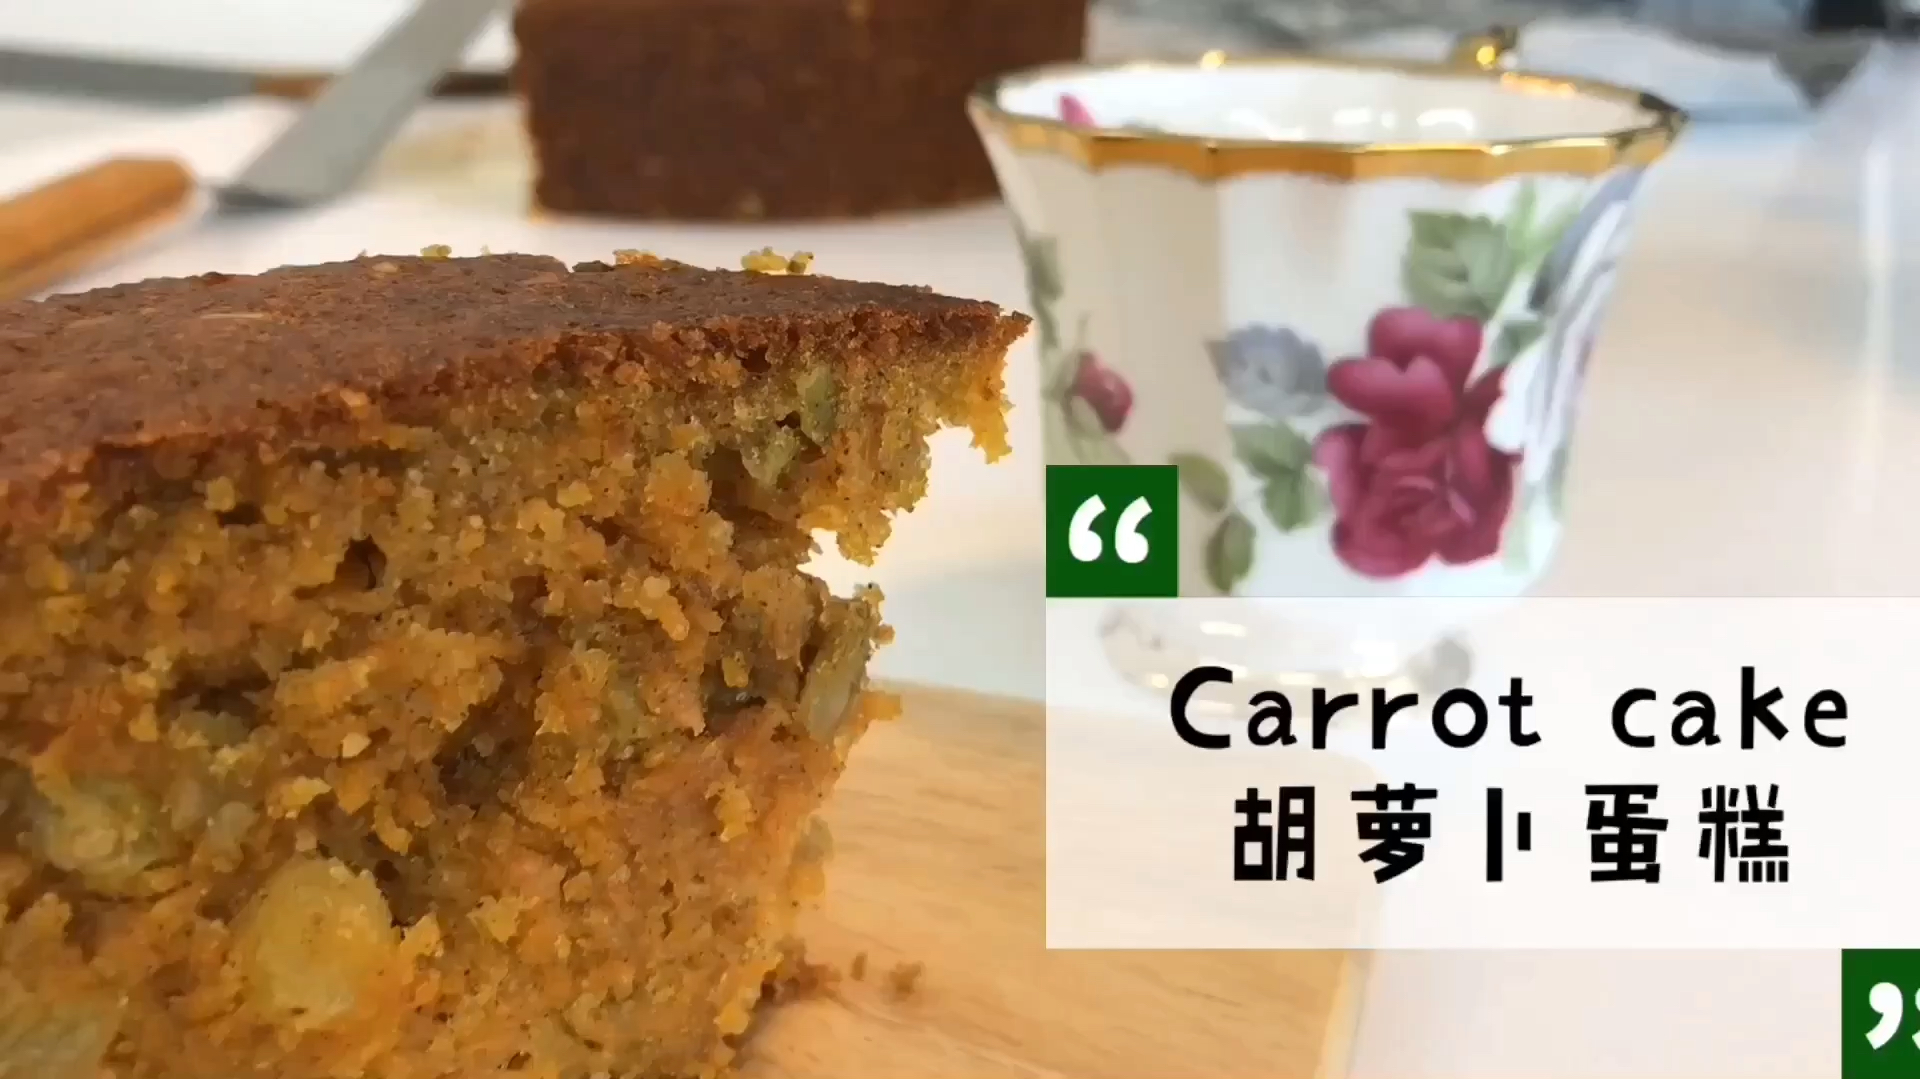 【简简厨房】胡萝卜蛋糕 - 哔哩哔哩